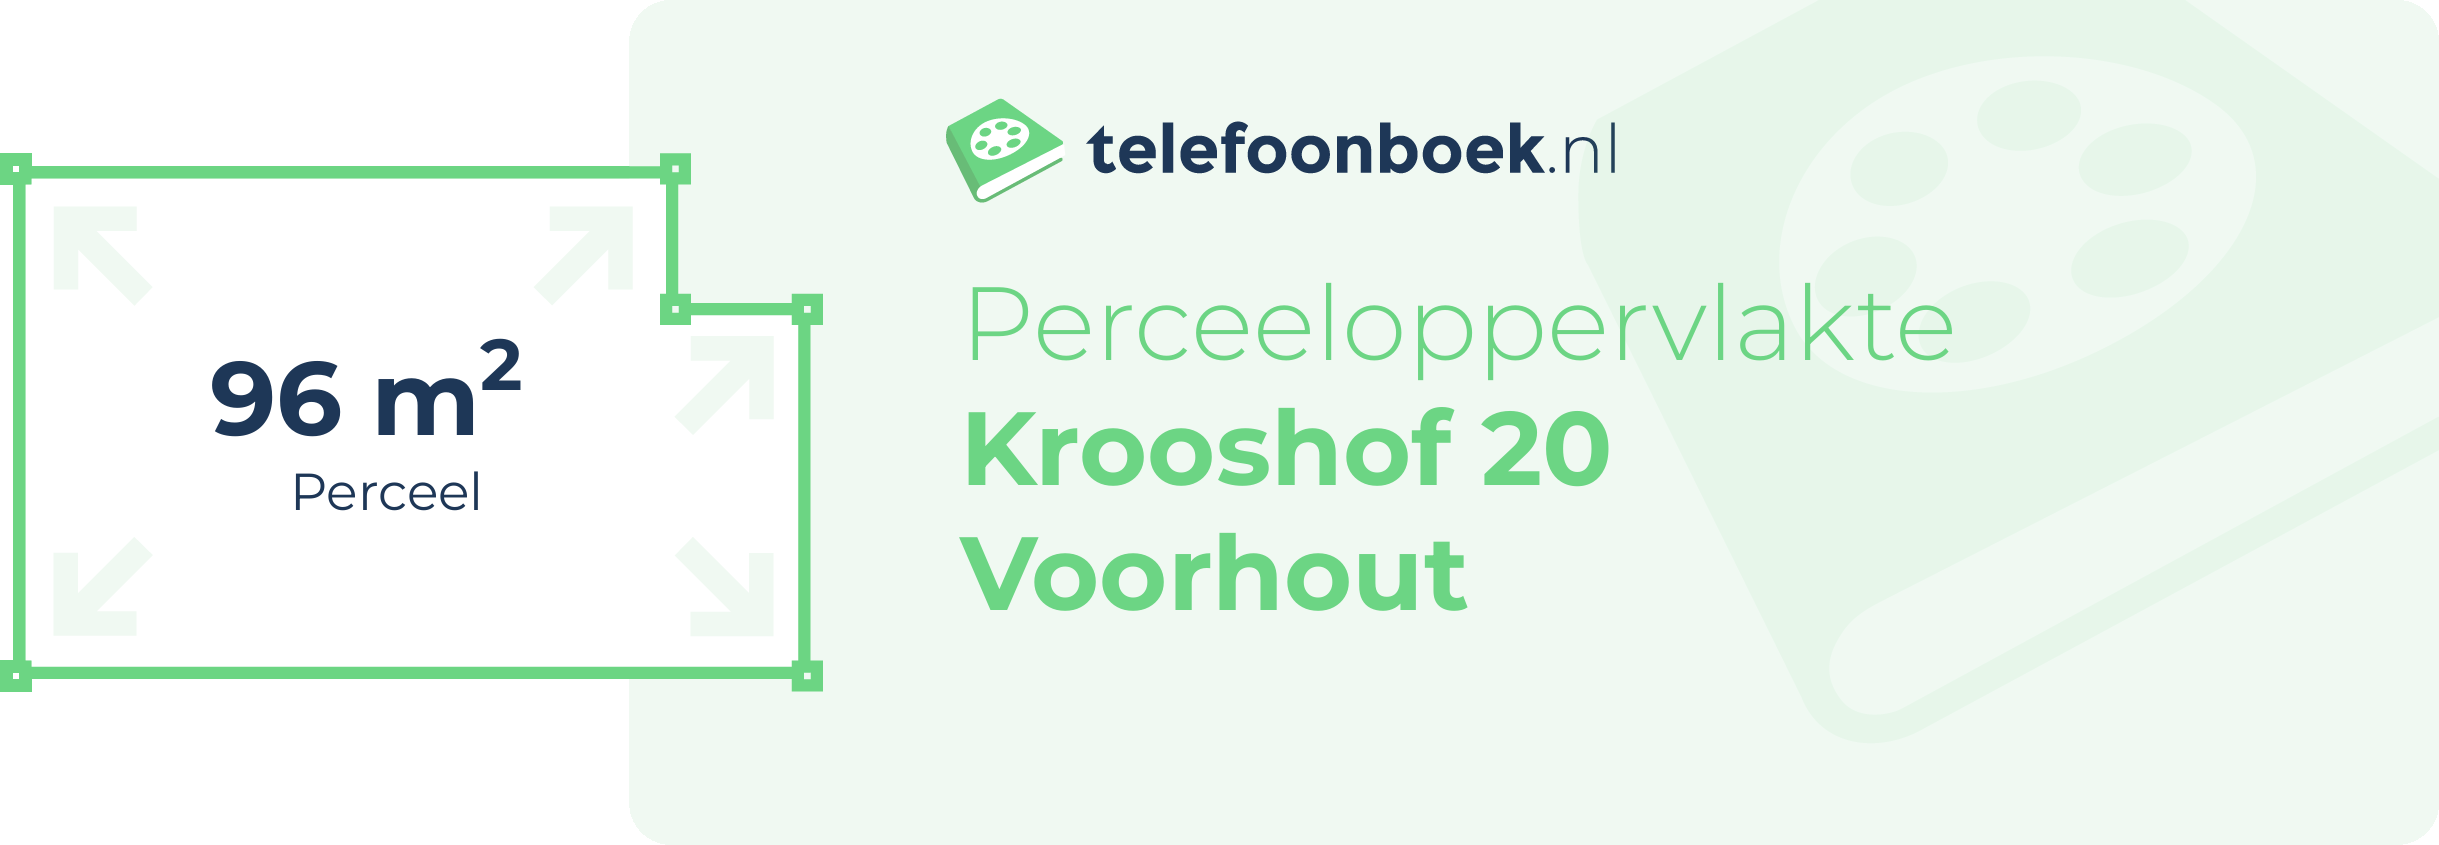 Perceeloppervlakte Krooshof 20 Voorhout